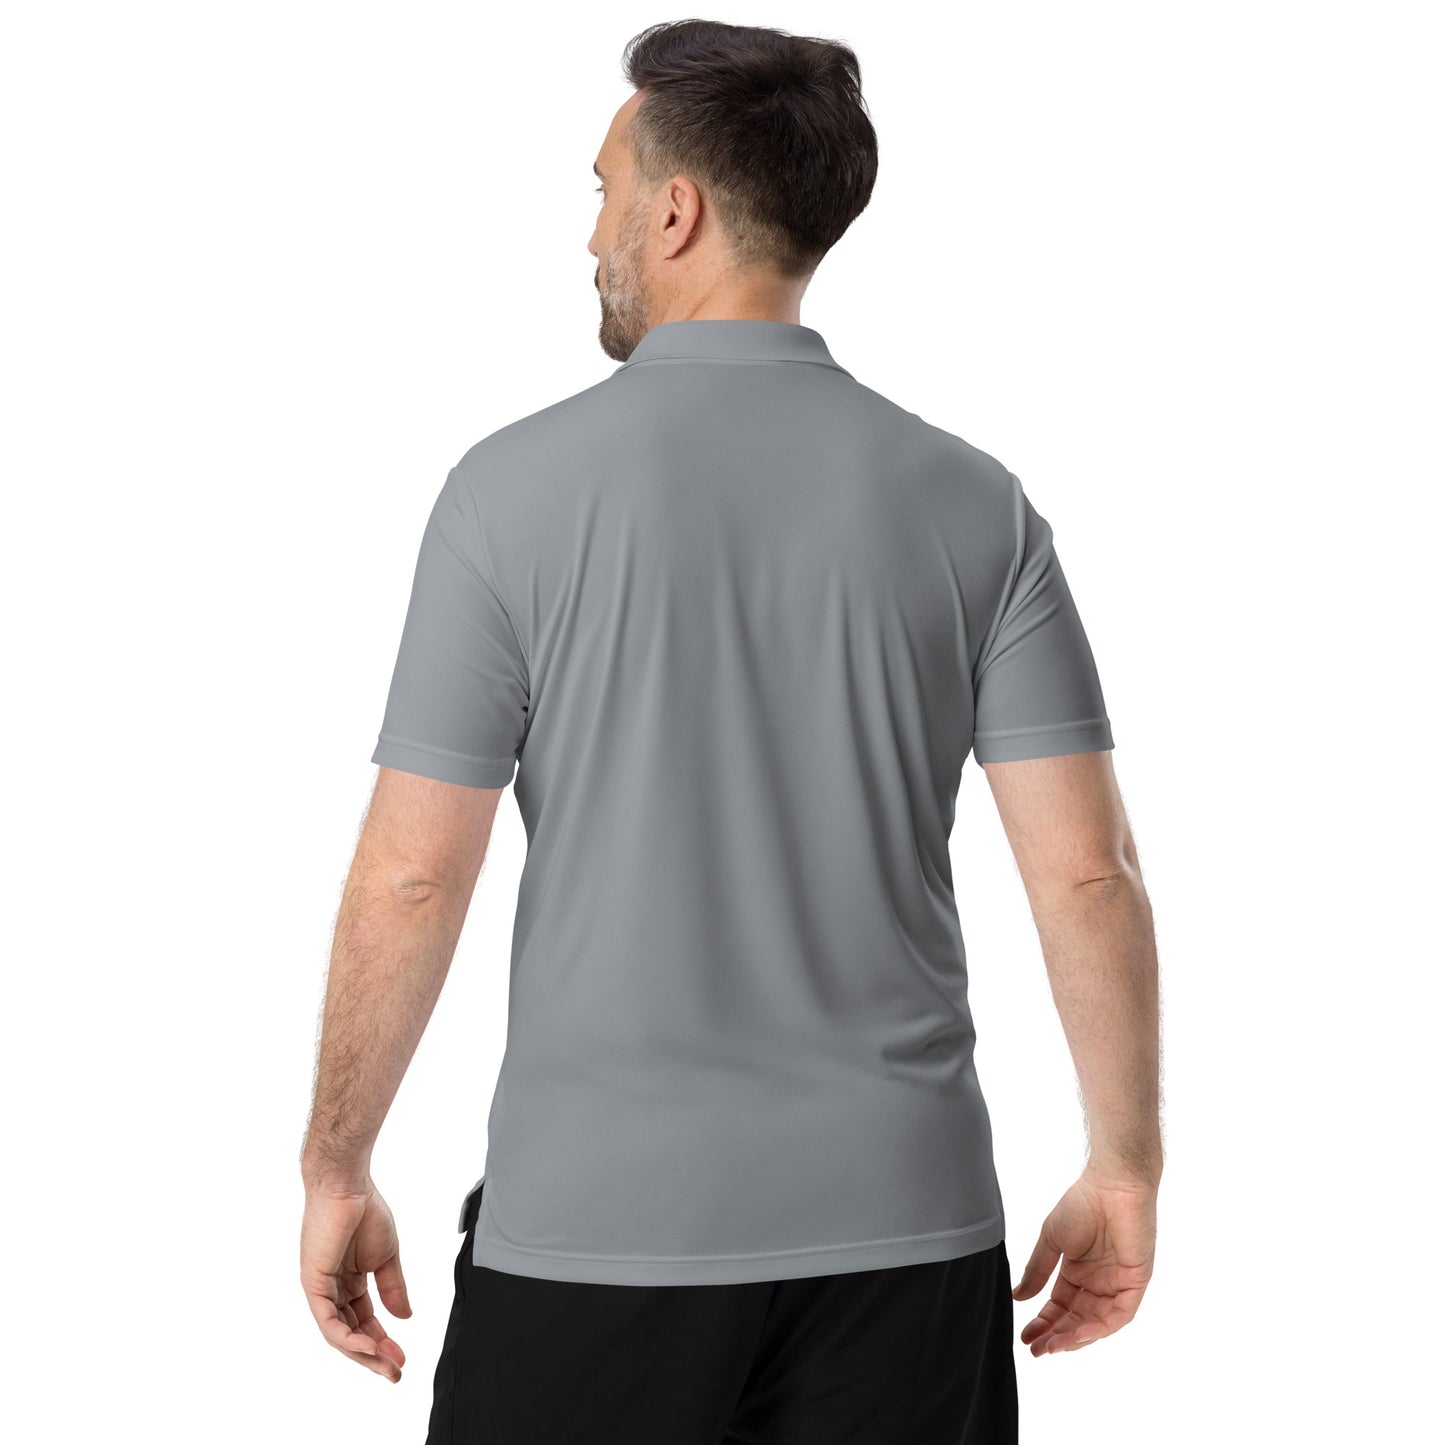 adidas performance polo shirt (gray)